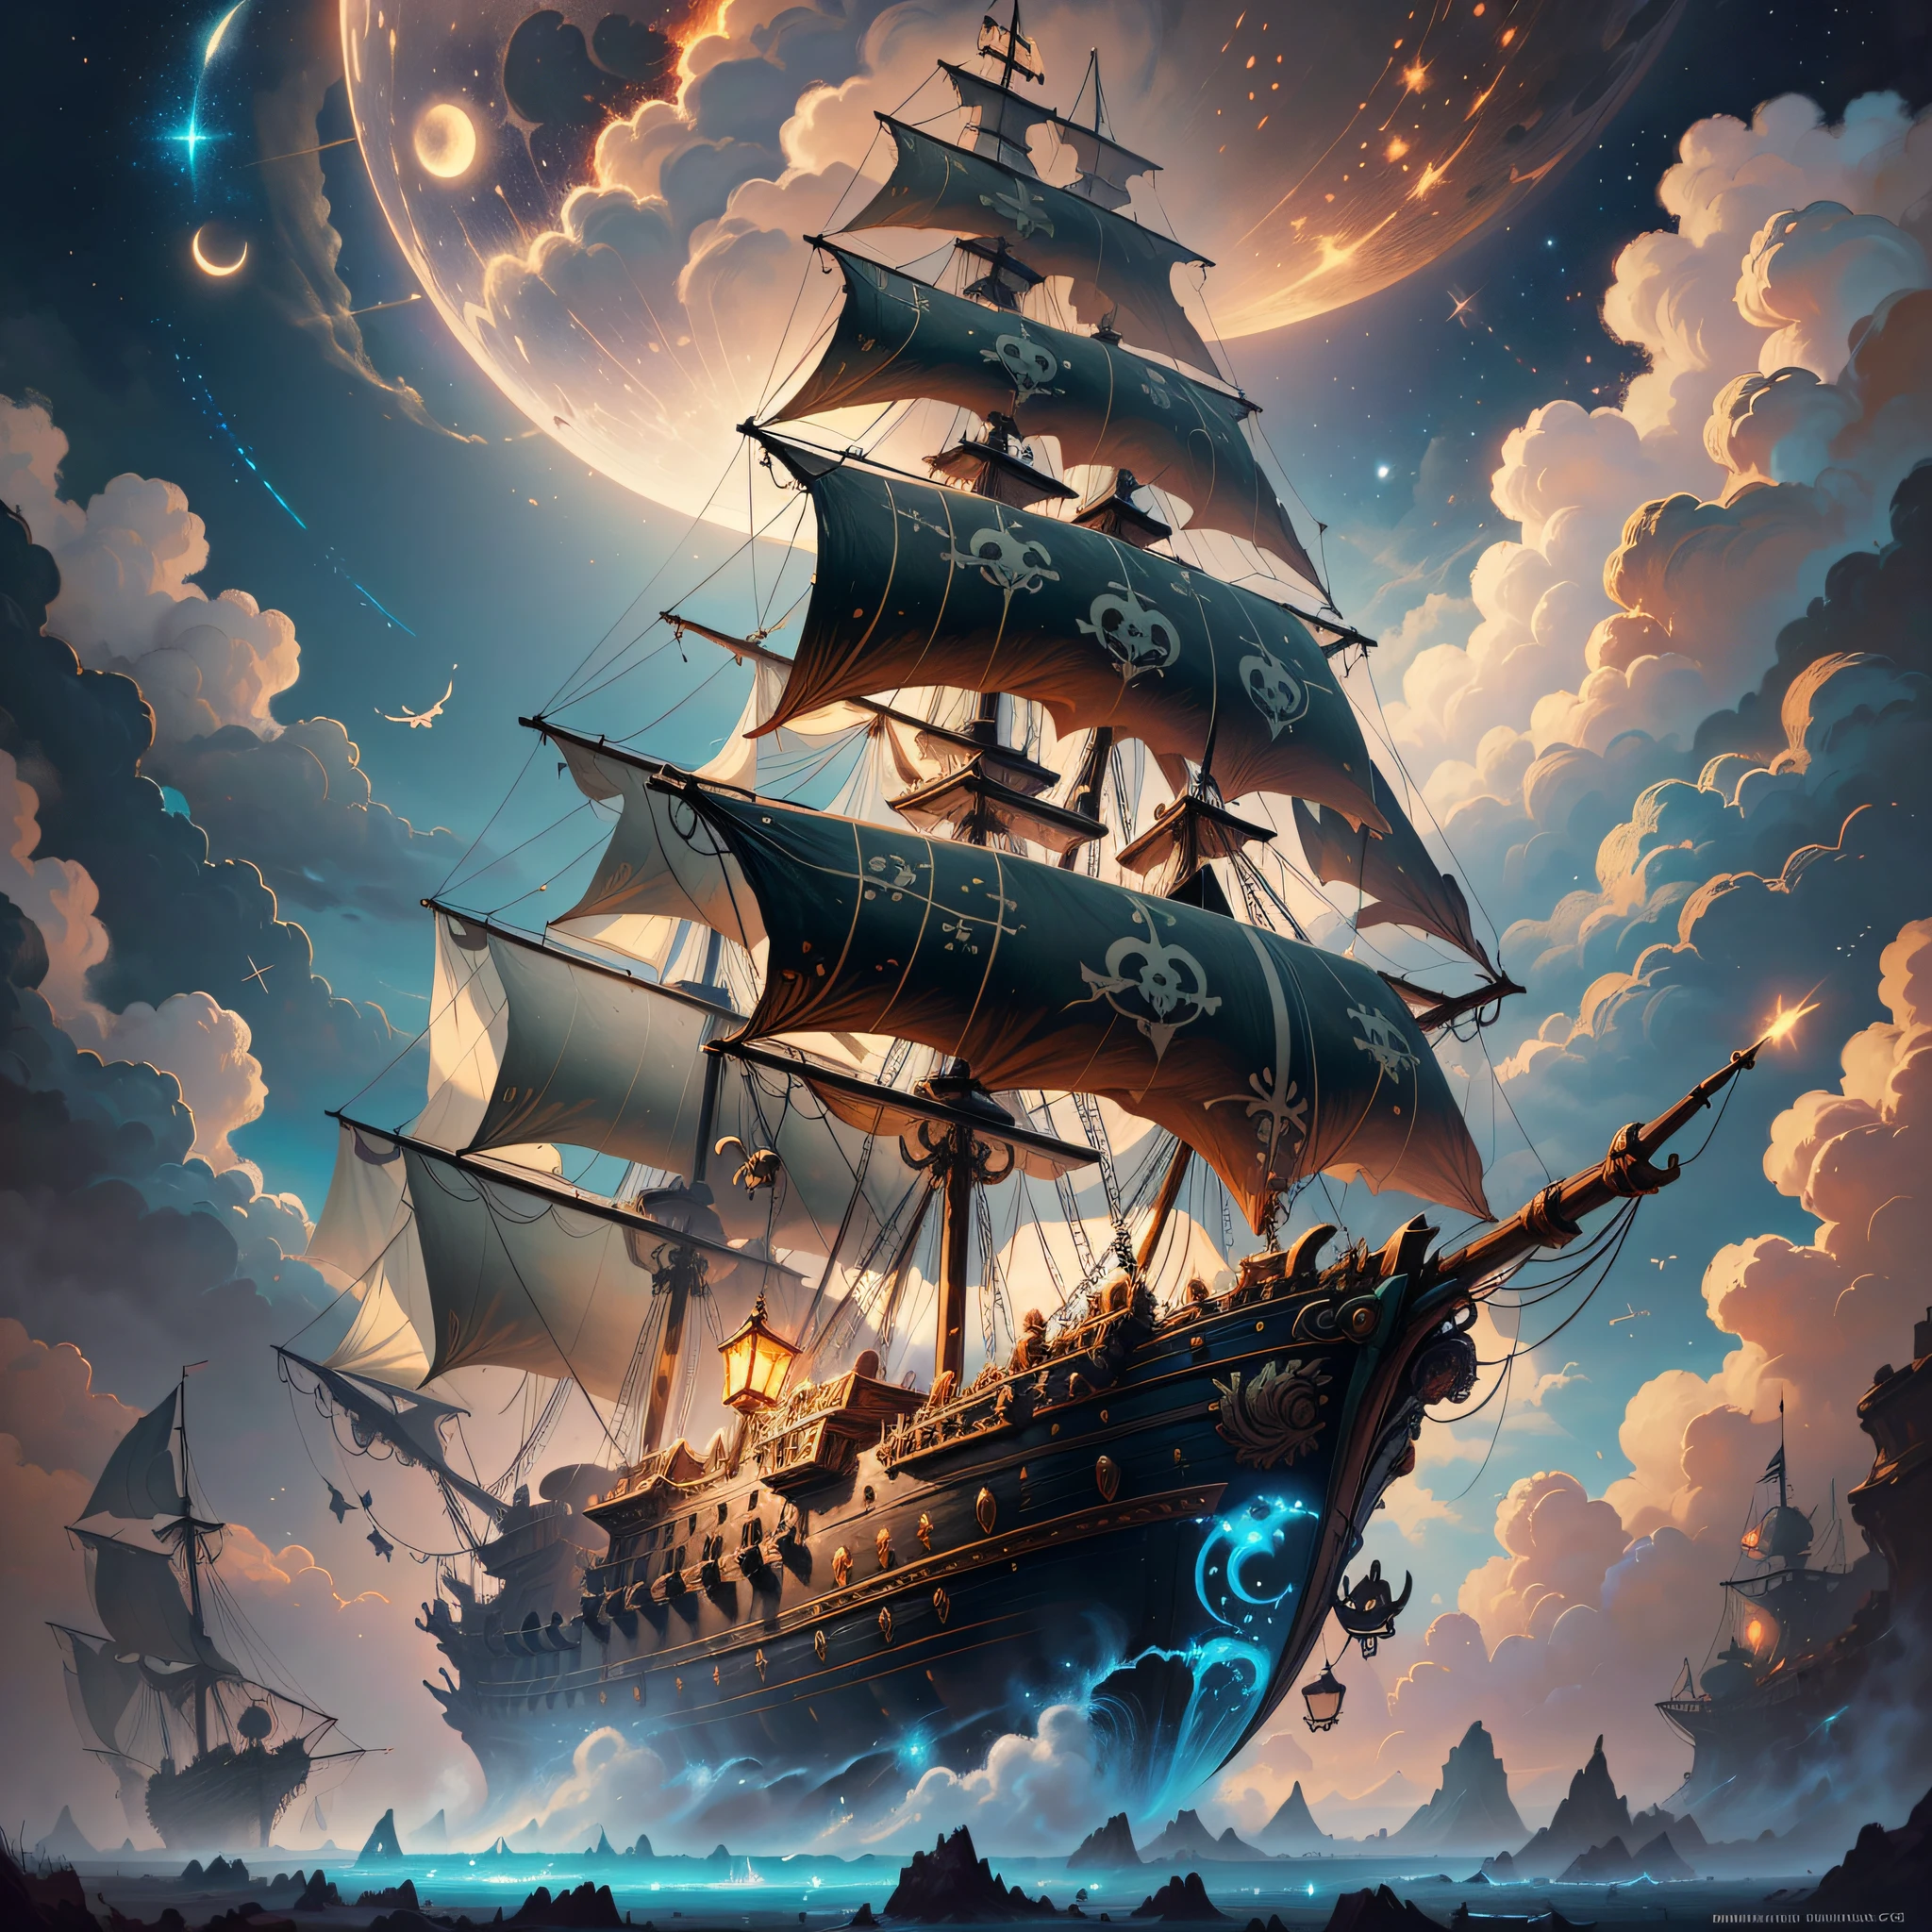 Uma pintura de um navio pirata voador cercado por pequenas fadas, nuvens, lua, estrelas no fundo, fantasia, arte digital altamente detalhada em 4K, Arte detalhada de alta qualidade em 8K, no estilo de Cyril Rolando, detailed fantasia digital art, epic fantasia science fiction illustration, papel de parede incrível, inspirado em Gaston Bussiere --auto --s2